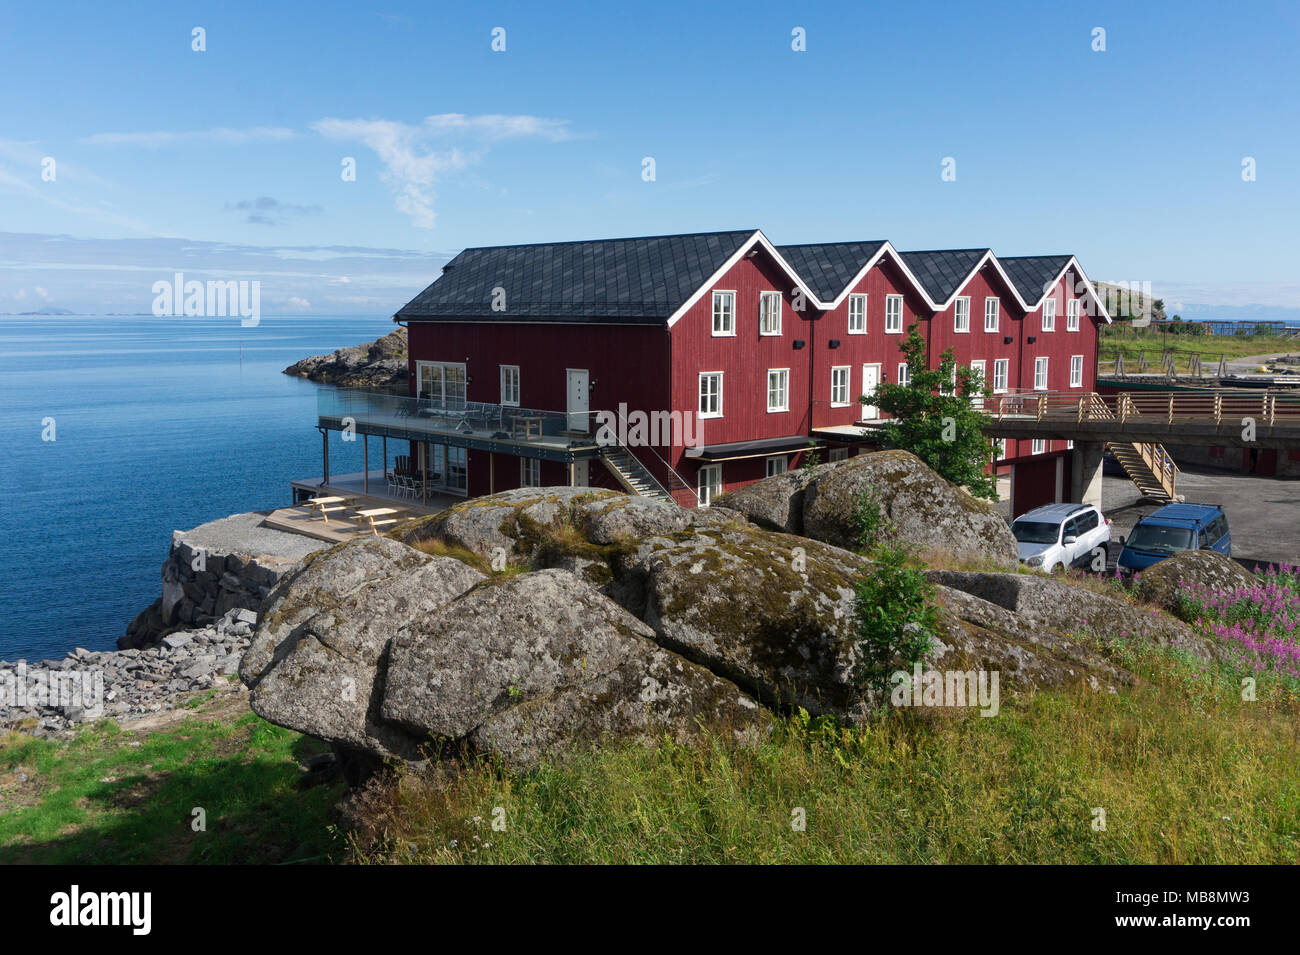 Tradizionale norvegese case rosso sul mare, arcipelago delle Lofoten, Norvegia. Nazionale percorso turistico Lofoten Foto Stock